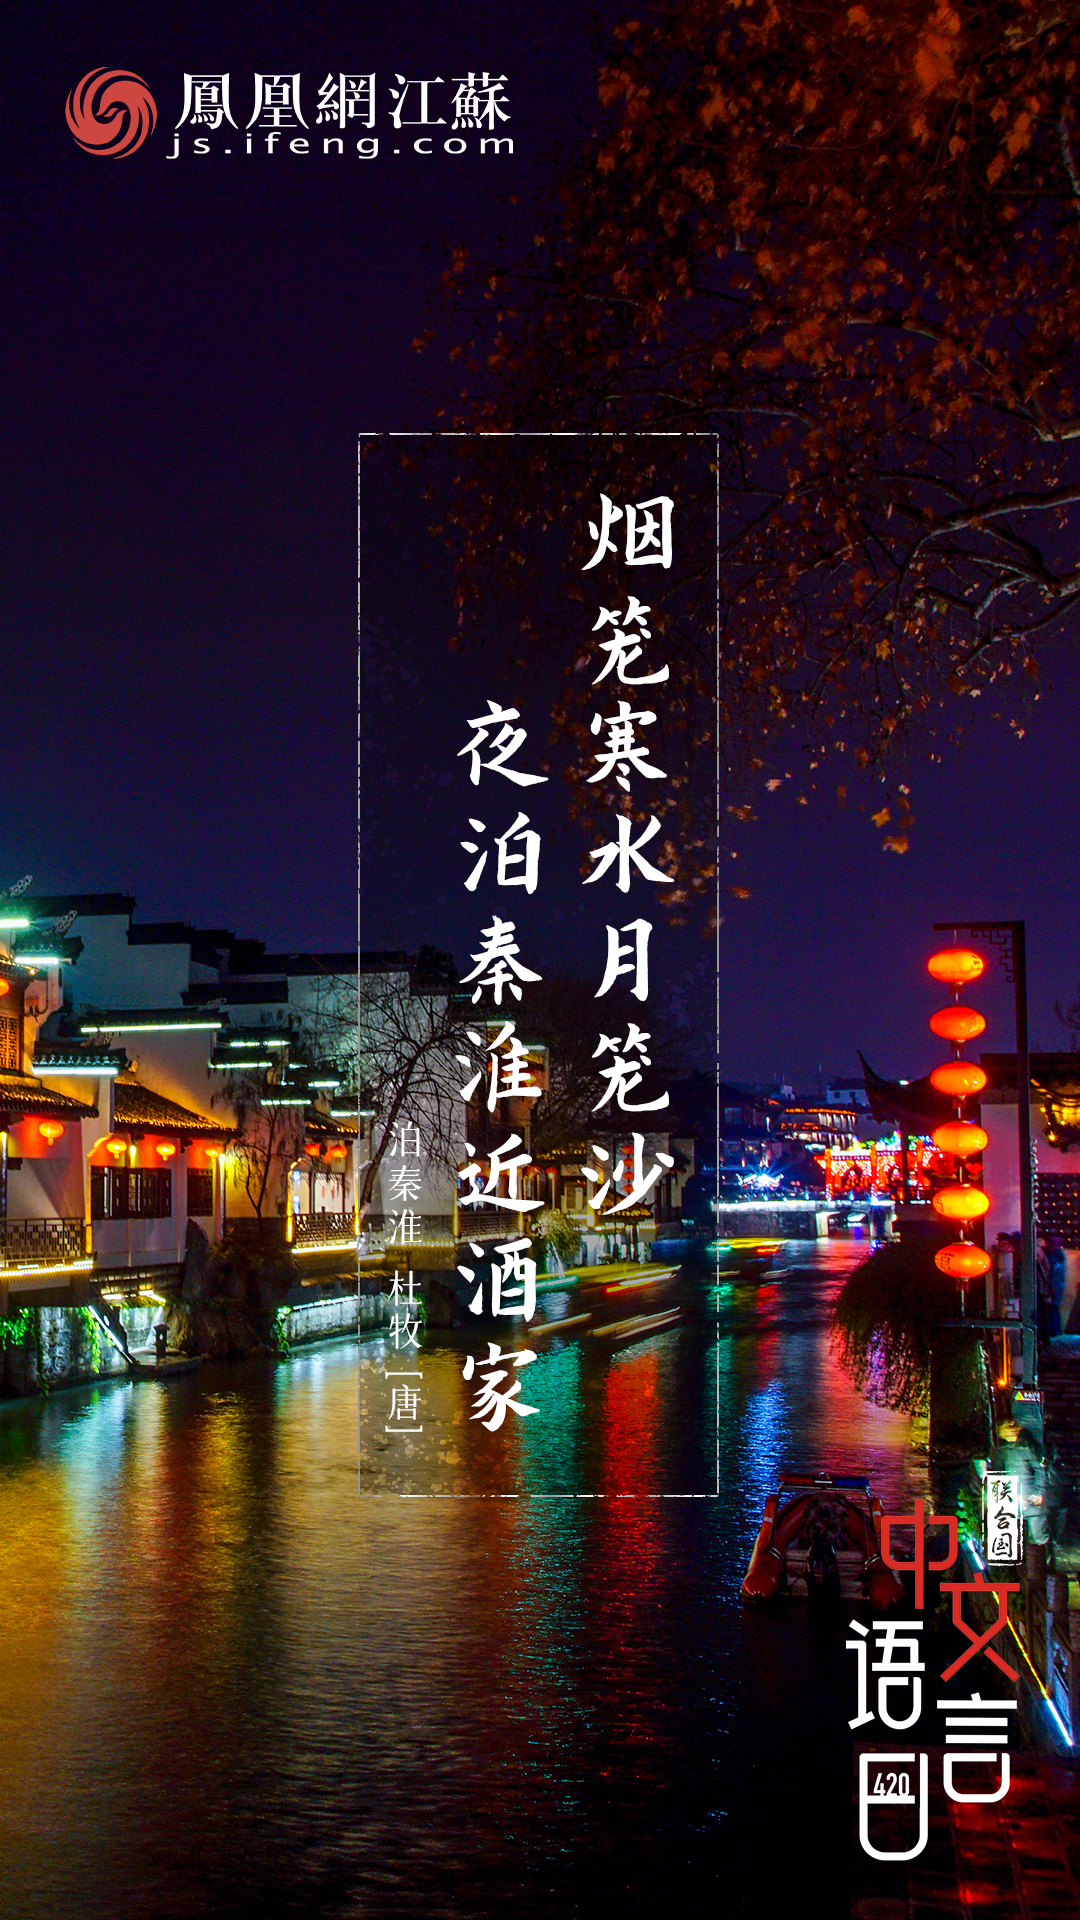 中文语言日,跟着诗词一起读南京凤凰网江苏